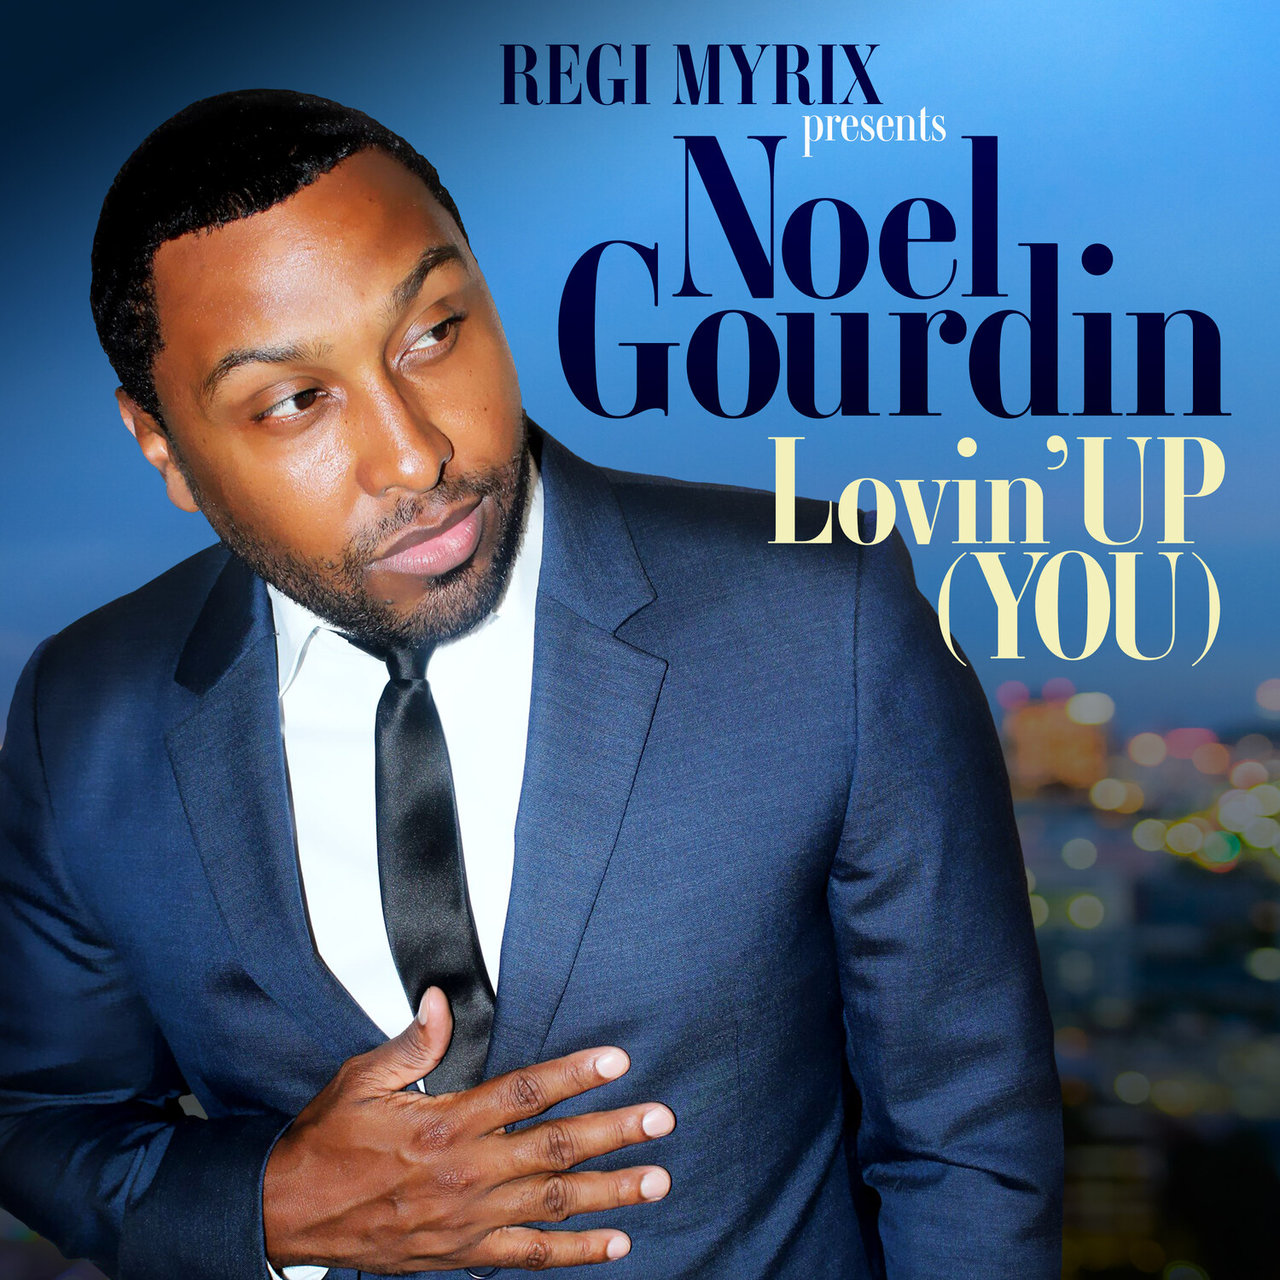 Noel Gourdin - Lovin' Up (You) (ft. Regi Myrix) (Cover)